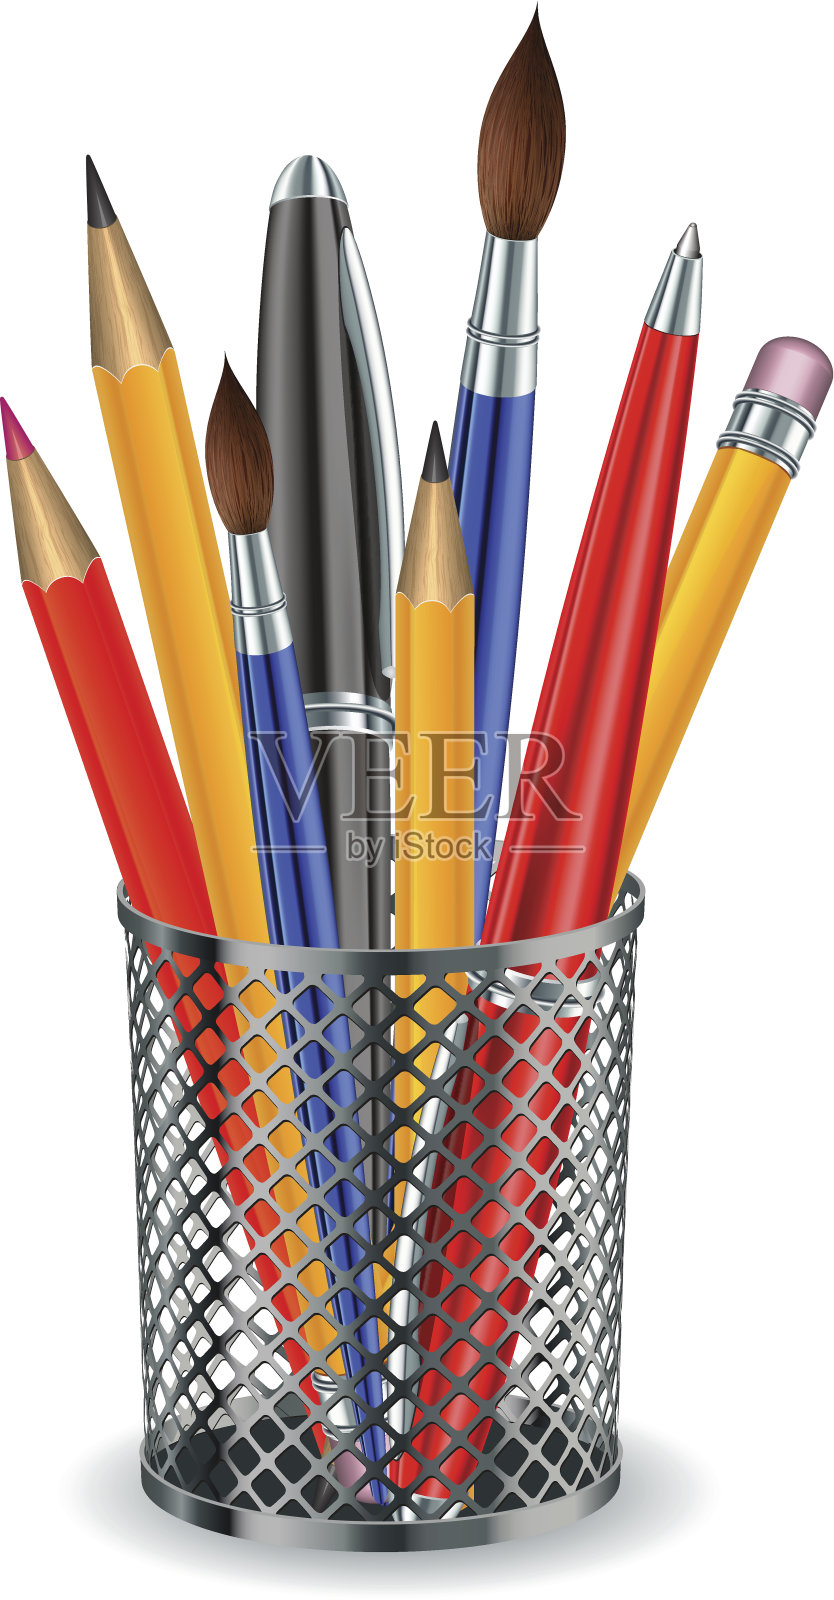 刷子、铅笔和钢笔都在架子里。插画图片素材